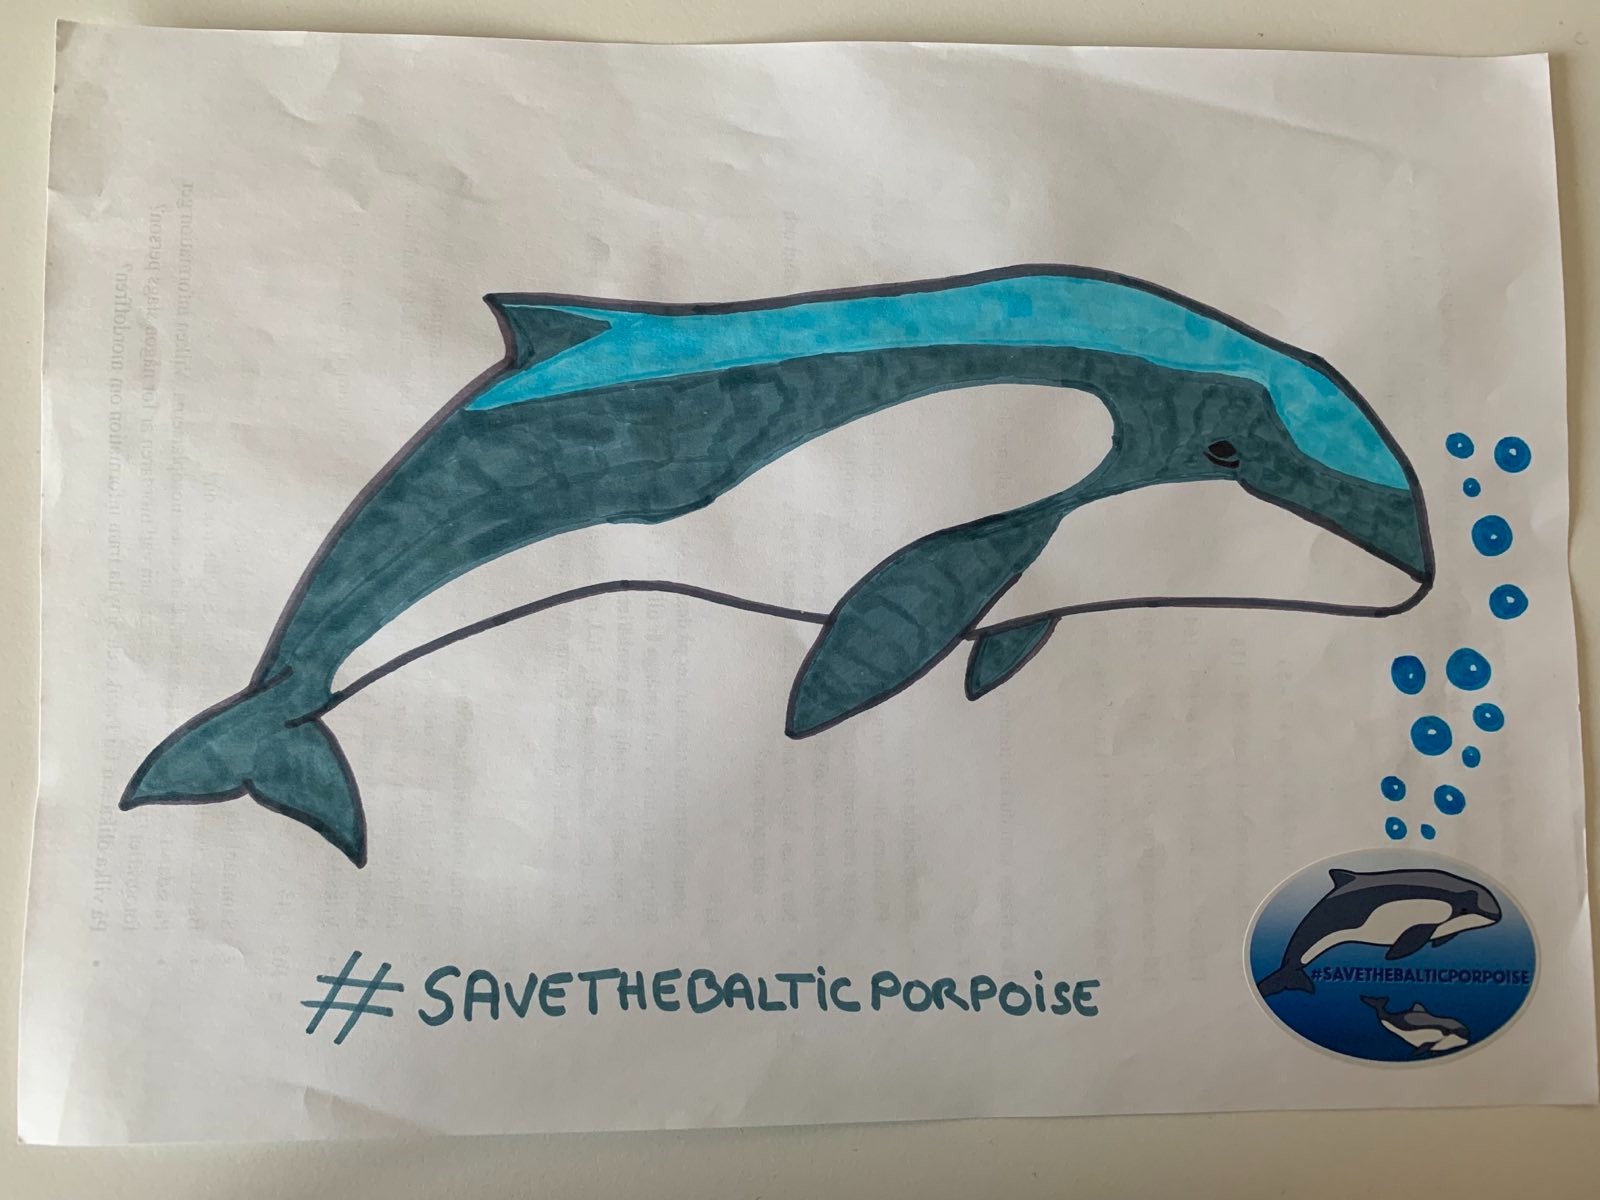 Rysunek niebieskiego morświna, poniżej hashtag #SaveTheBalticPorpoise